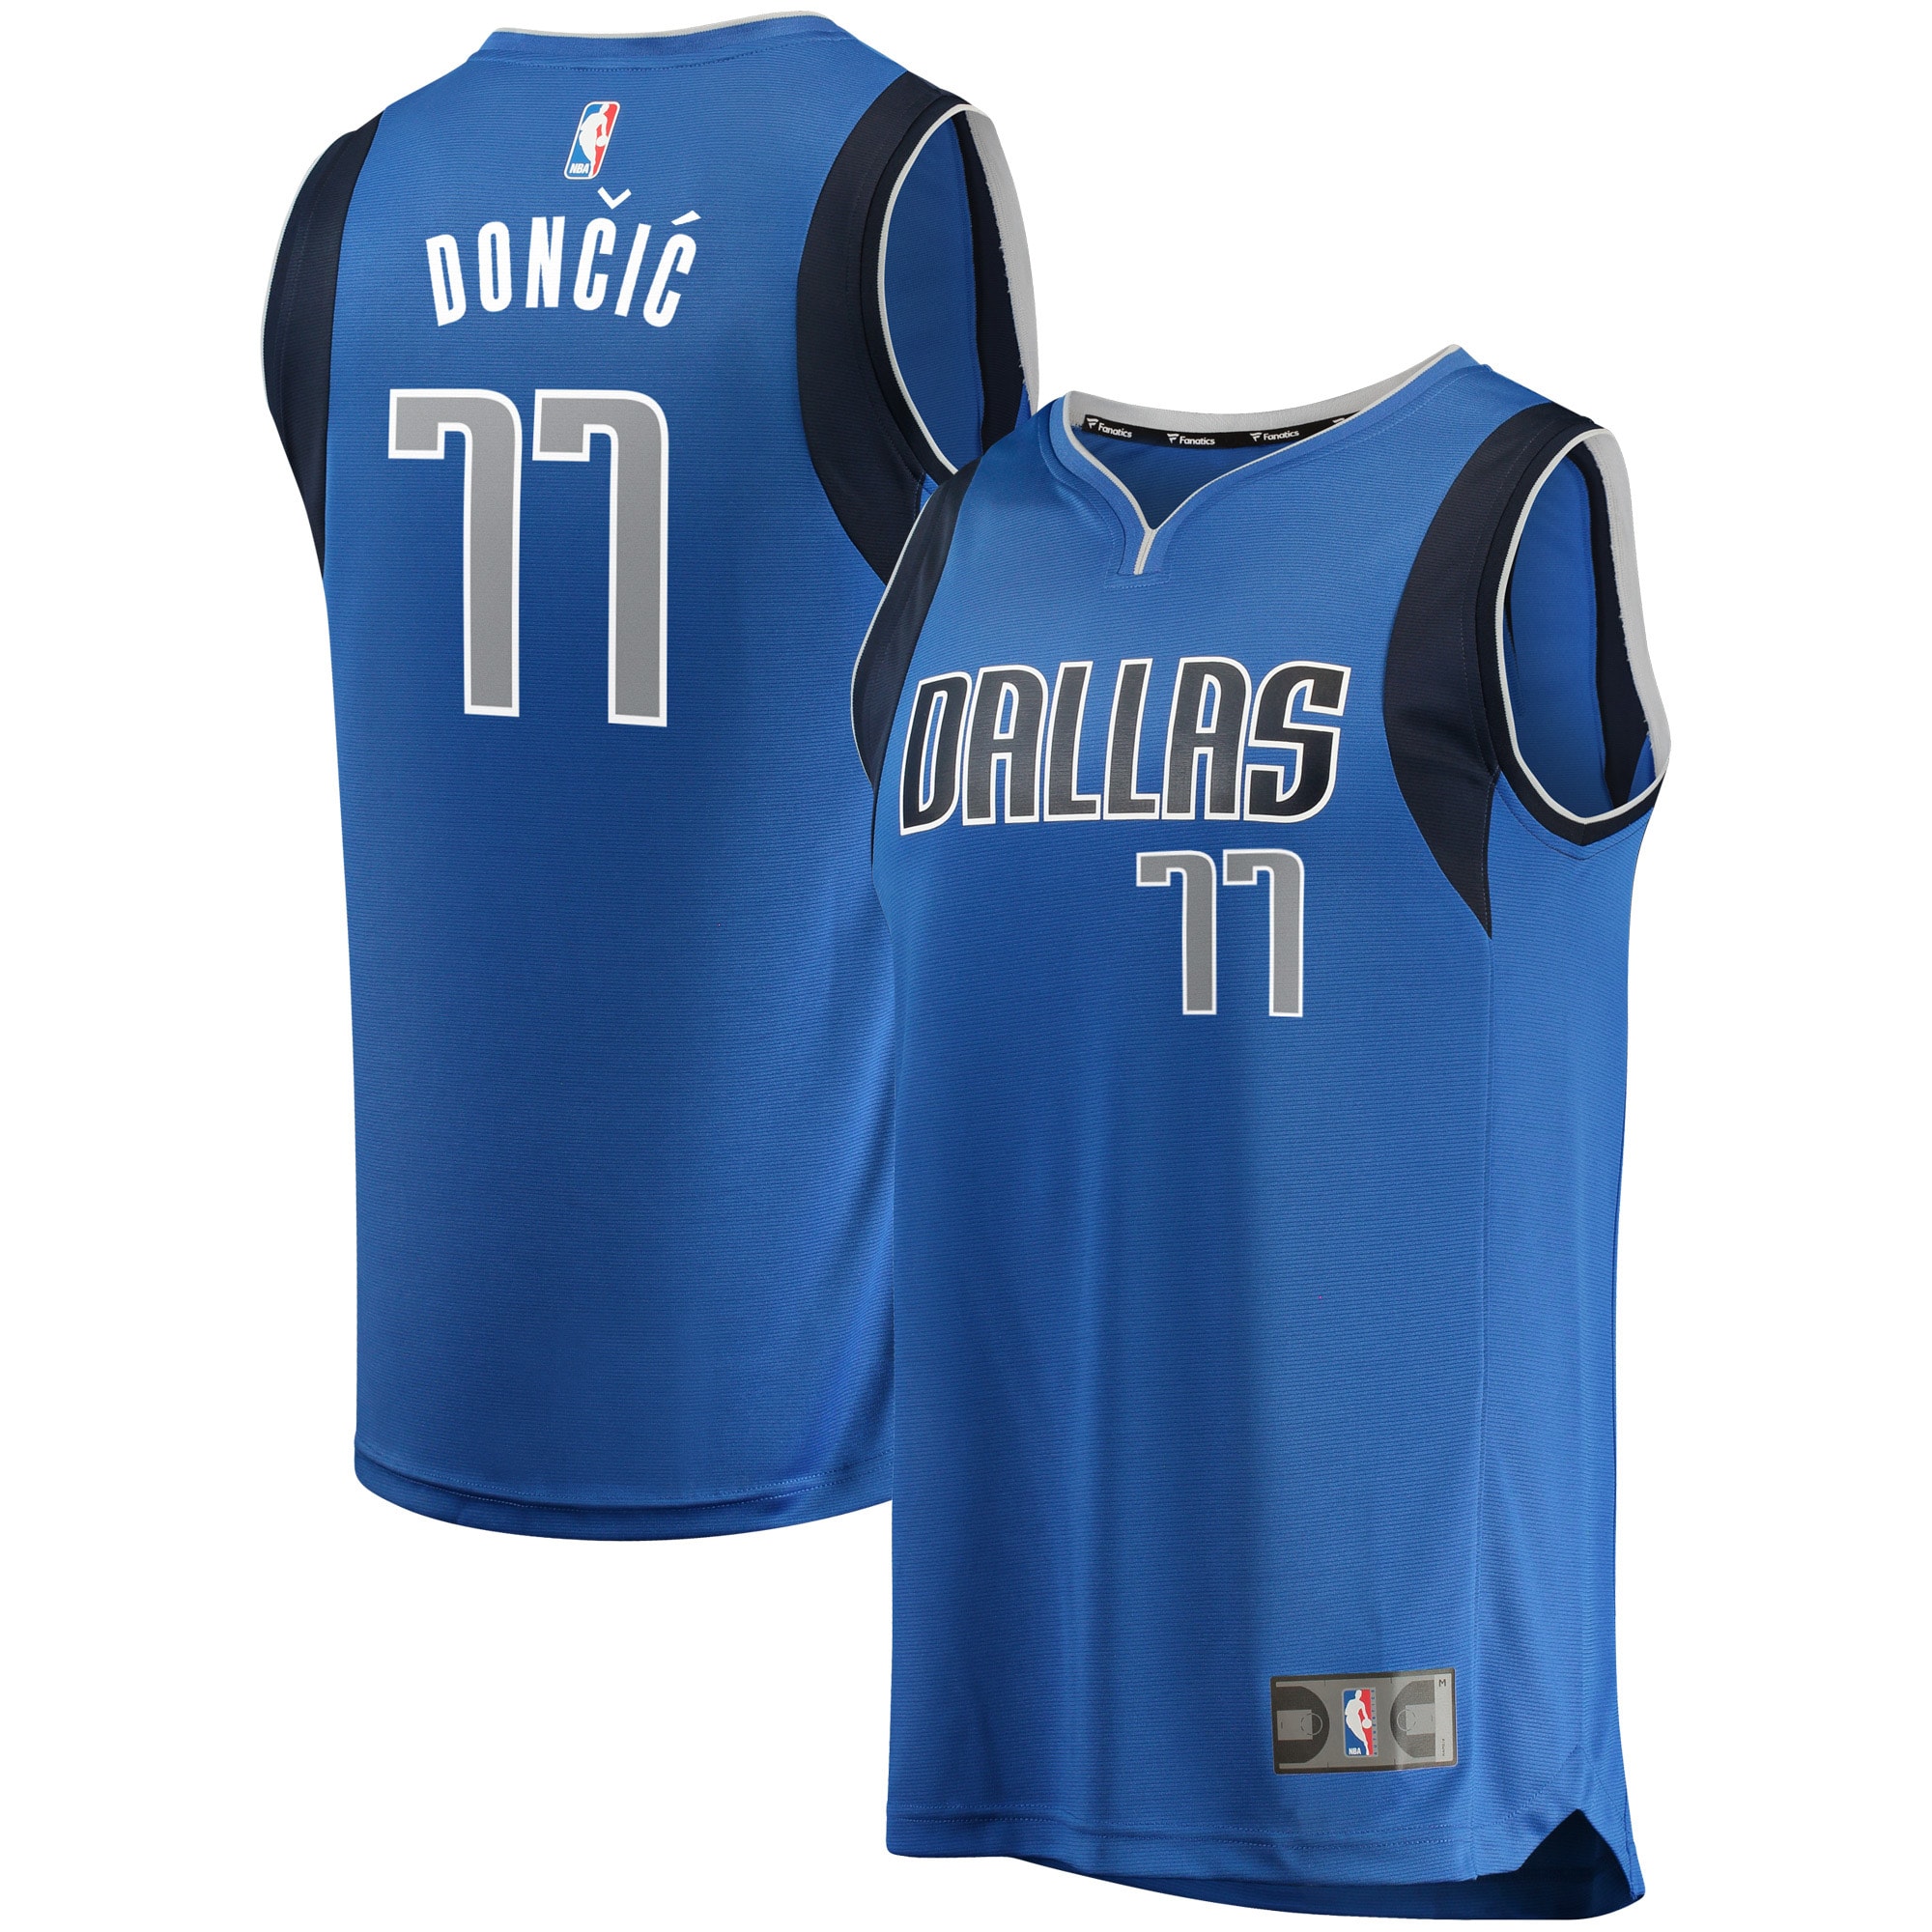 Men's Fanatics Branded Luka Doncic Blue Dallas Mavericks Fast Break Replica Jersey - Icon Edition - image 1 of 6